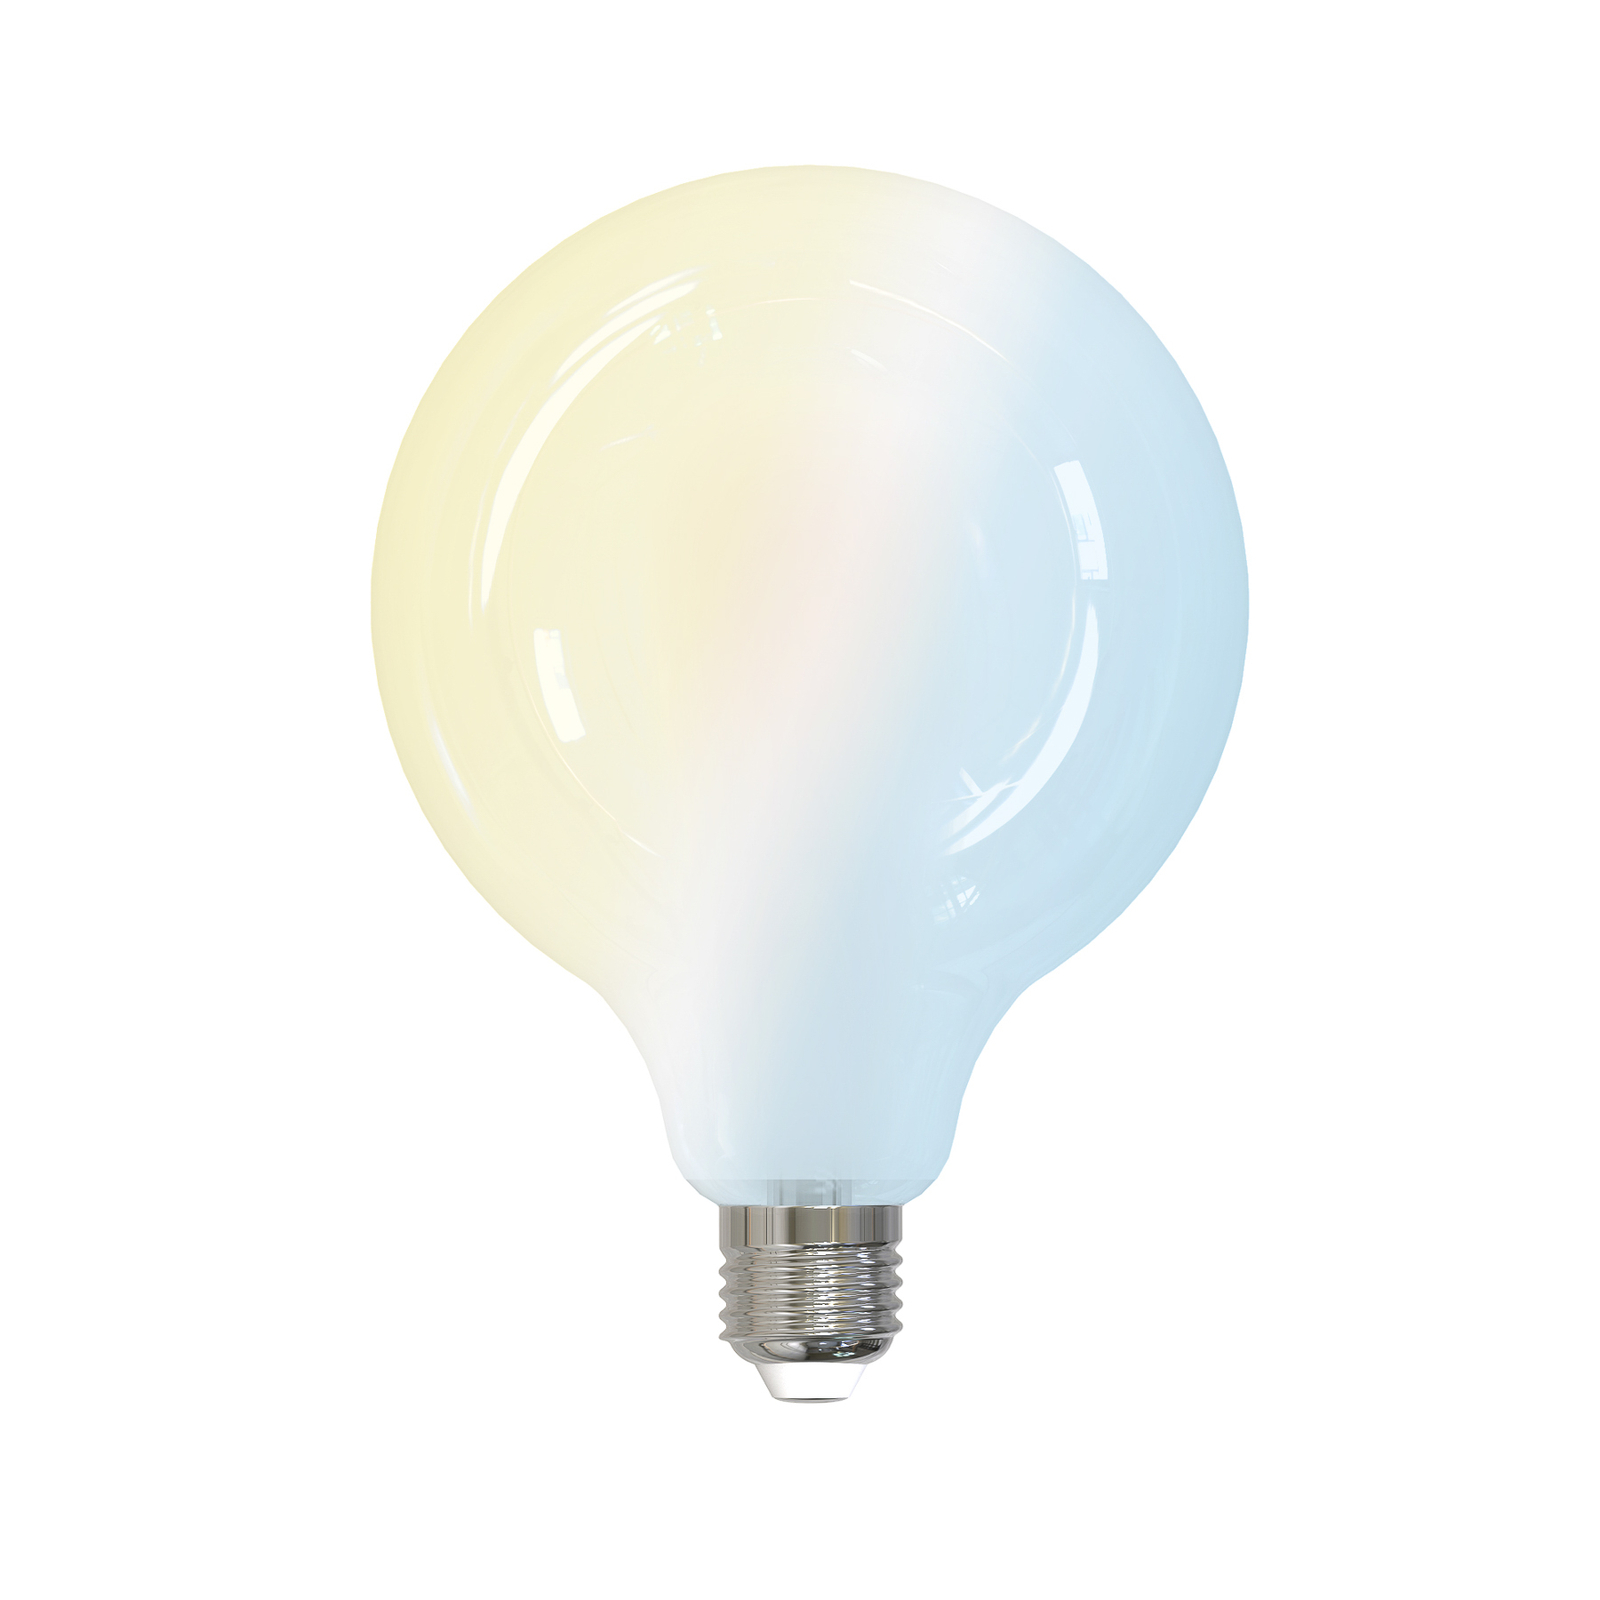 E27 G125 LED-Lampe 7W tunable white WLAN matt 3er